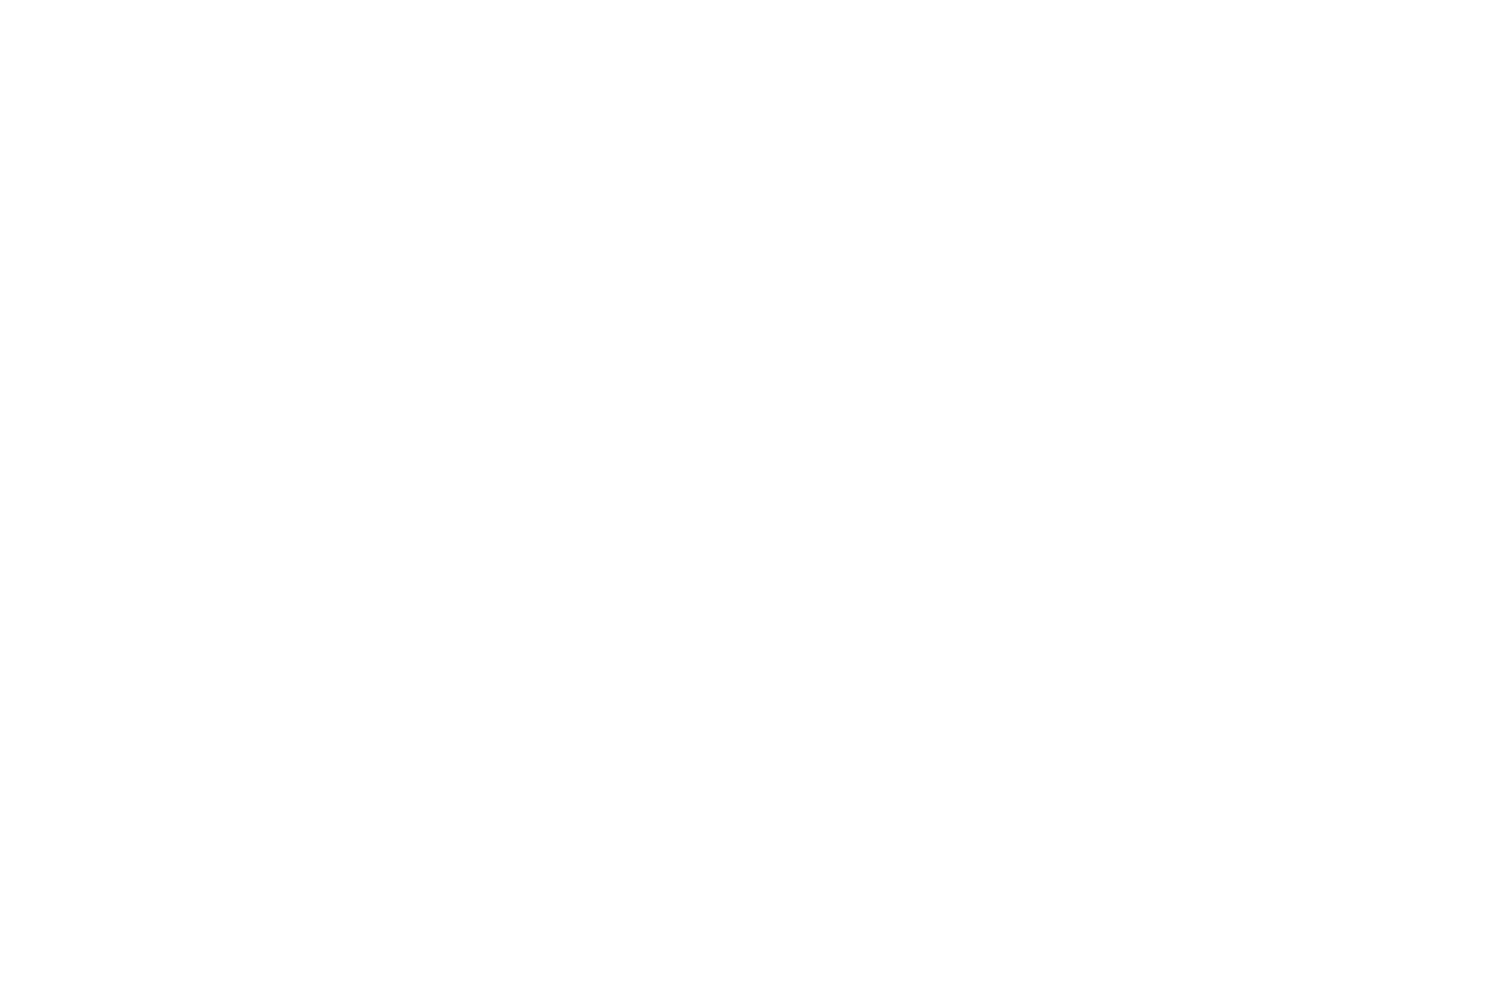 Spilt Zero Proof